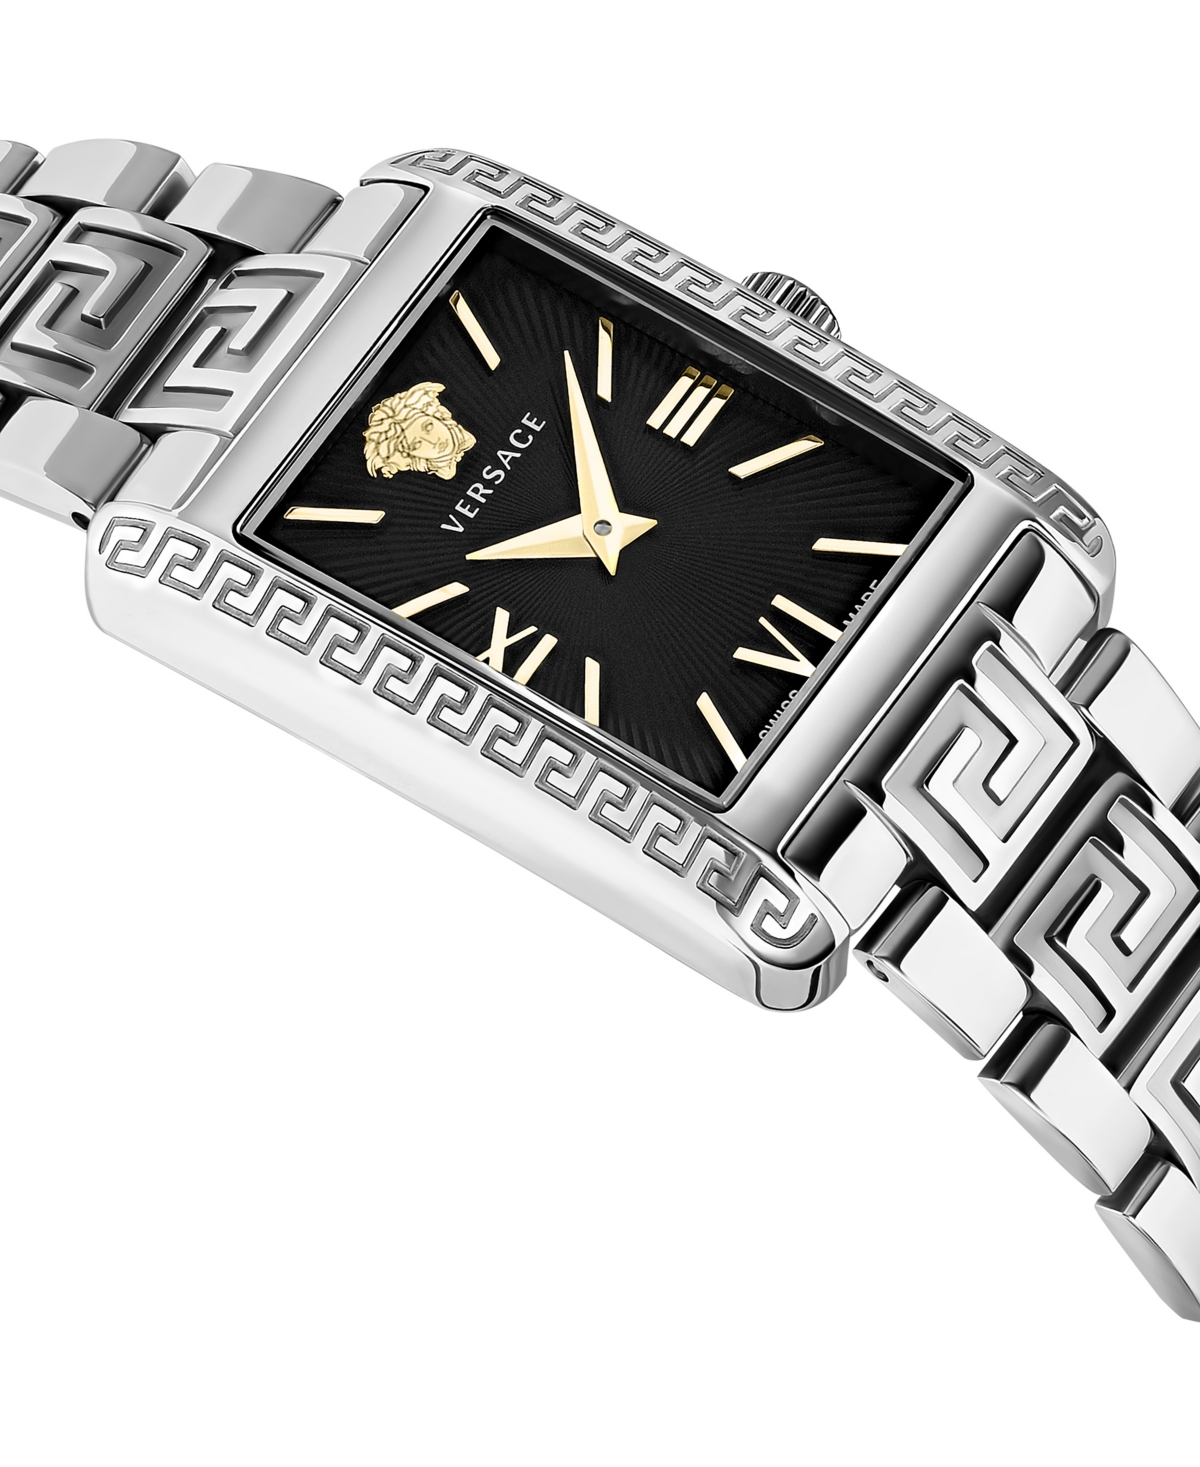 Shop Versace Women's Swiss Tonneau Stainless Steel Bracelet Watch 23x33mm